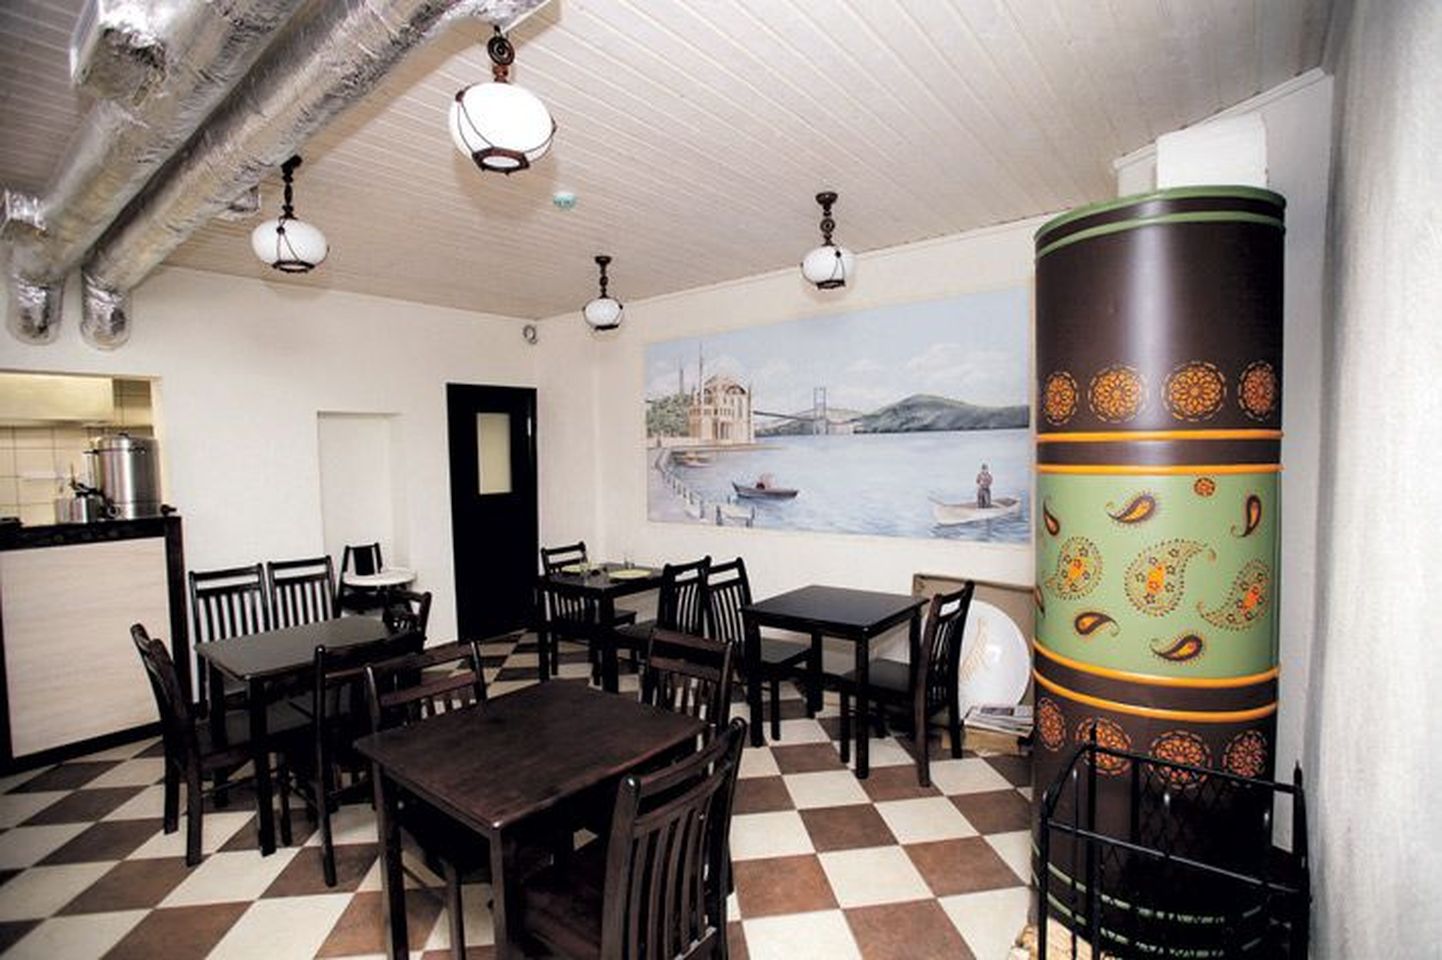 Uue toidukoha veidi idamaises stiilis
 kujundatud söögisaali ilmestab suur 
seinamaal.